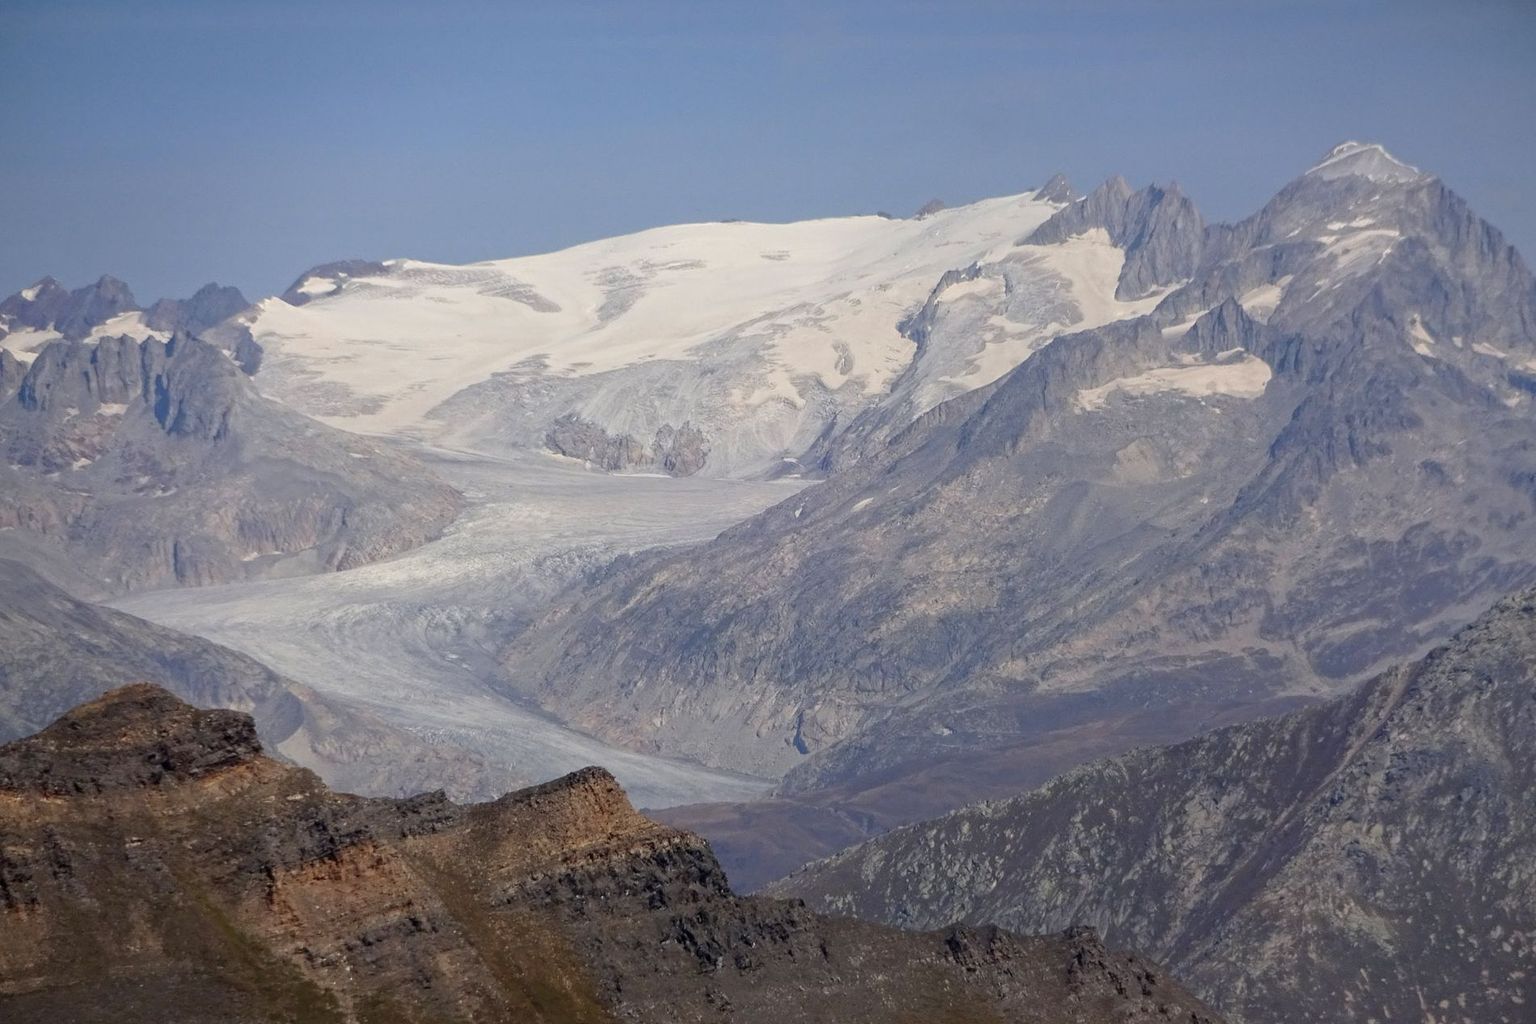 Contrairement à d'autres glaciers, le glacier du Rhône (VS) avait à nouveau une partie accumulation cette année (la neige hivernale a duré tout l'été) - mais c'est beaucoup trop petit pour maintenir le glacier en équilibre.